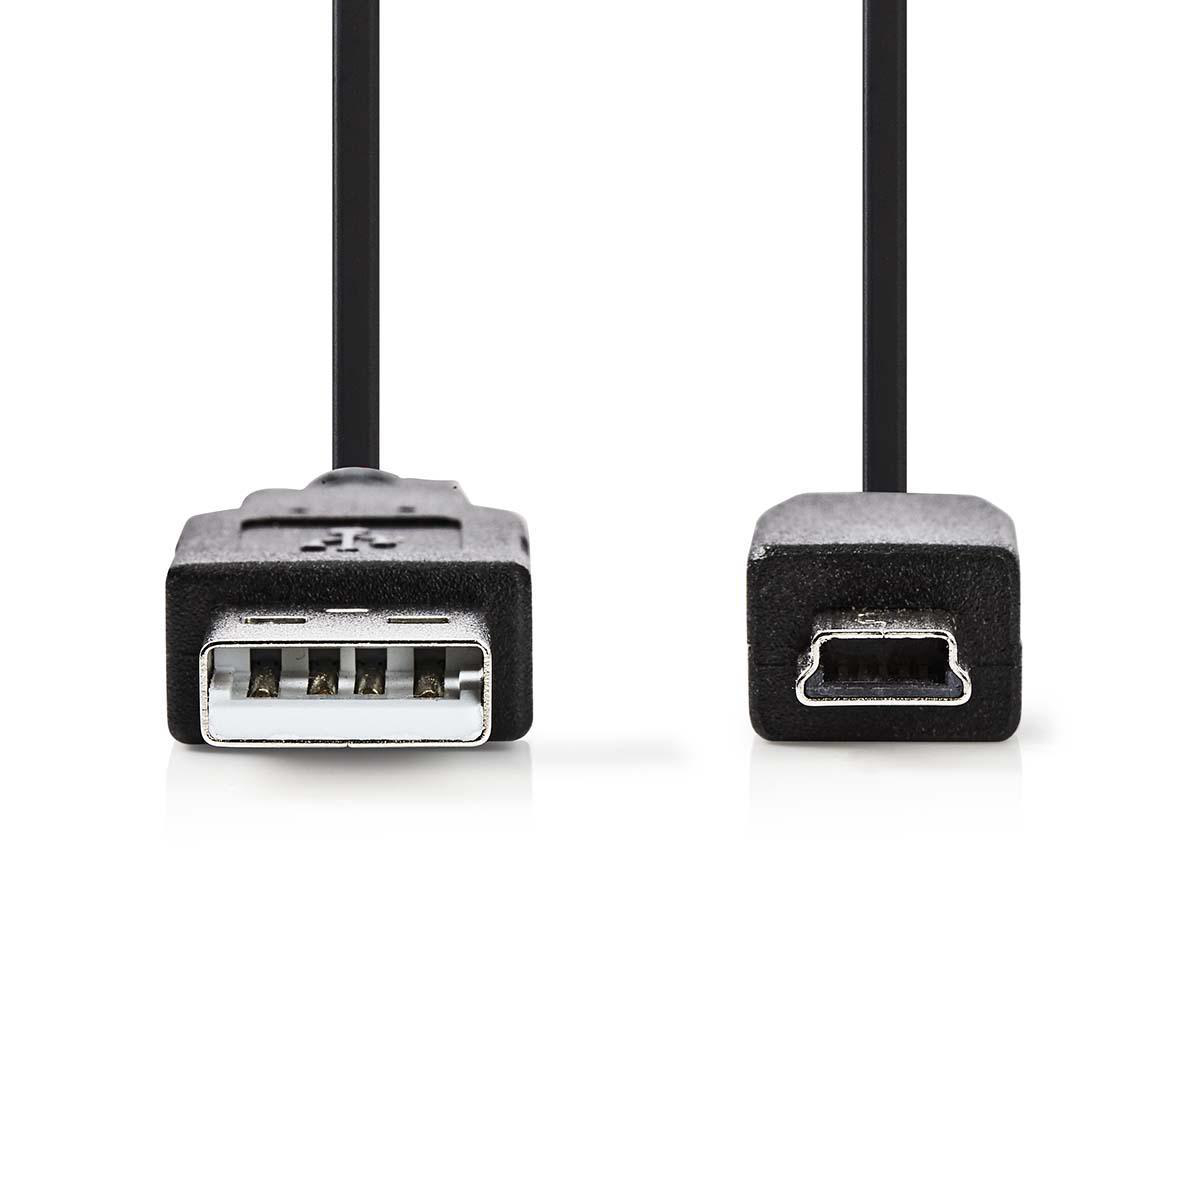 Nedis propojovací kabel USB 2.0 zástrčka USB A - zástrčka USB mini B 5-pin, 5 m (CCGP60300BK50)